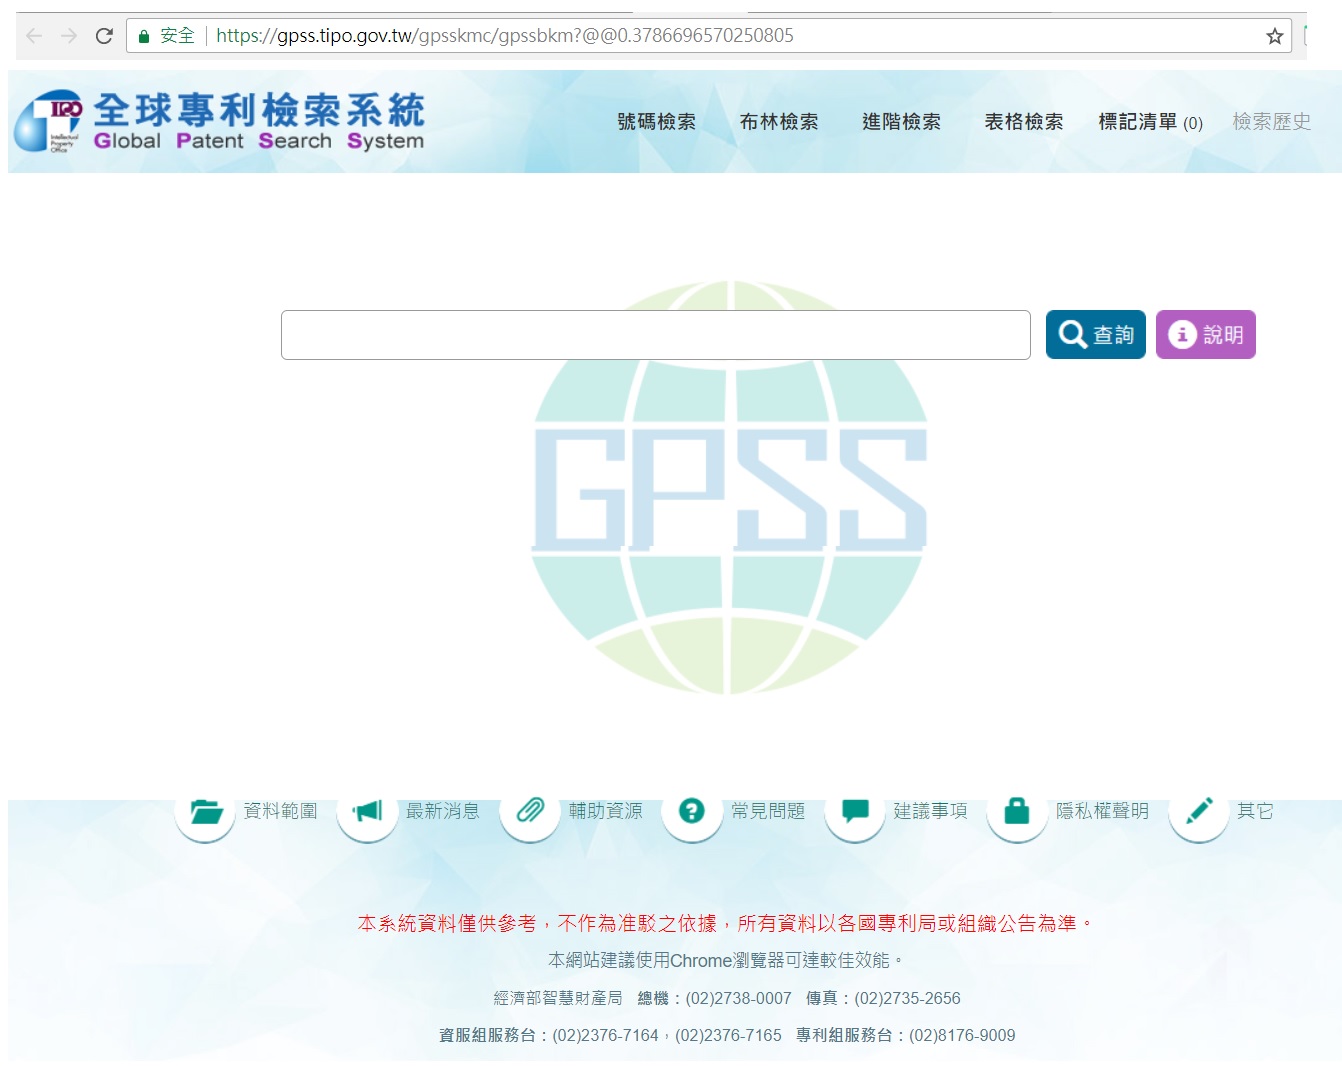 台灣智慧財產局「產業專利知識平台系統」提供五大專利局與台灣最新發明專利公開公報之開放資料